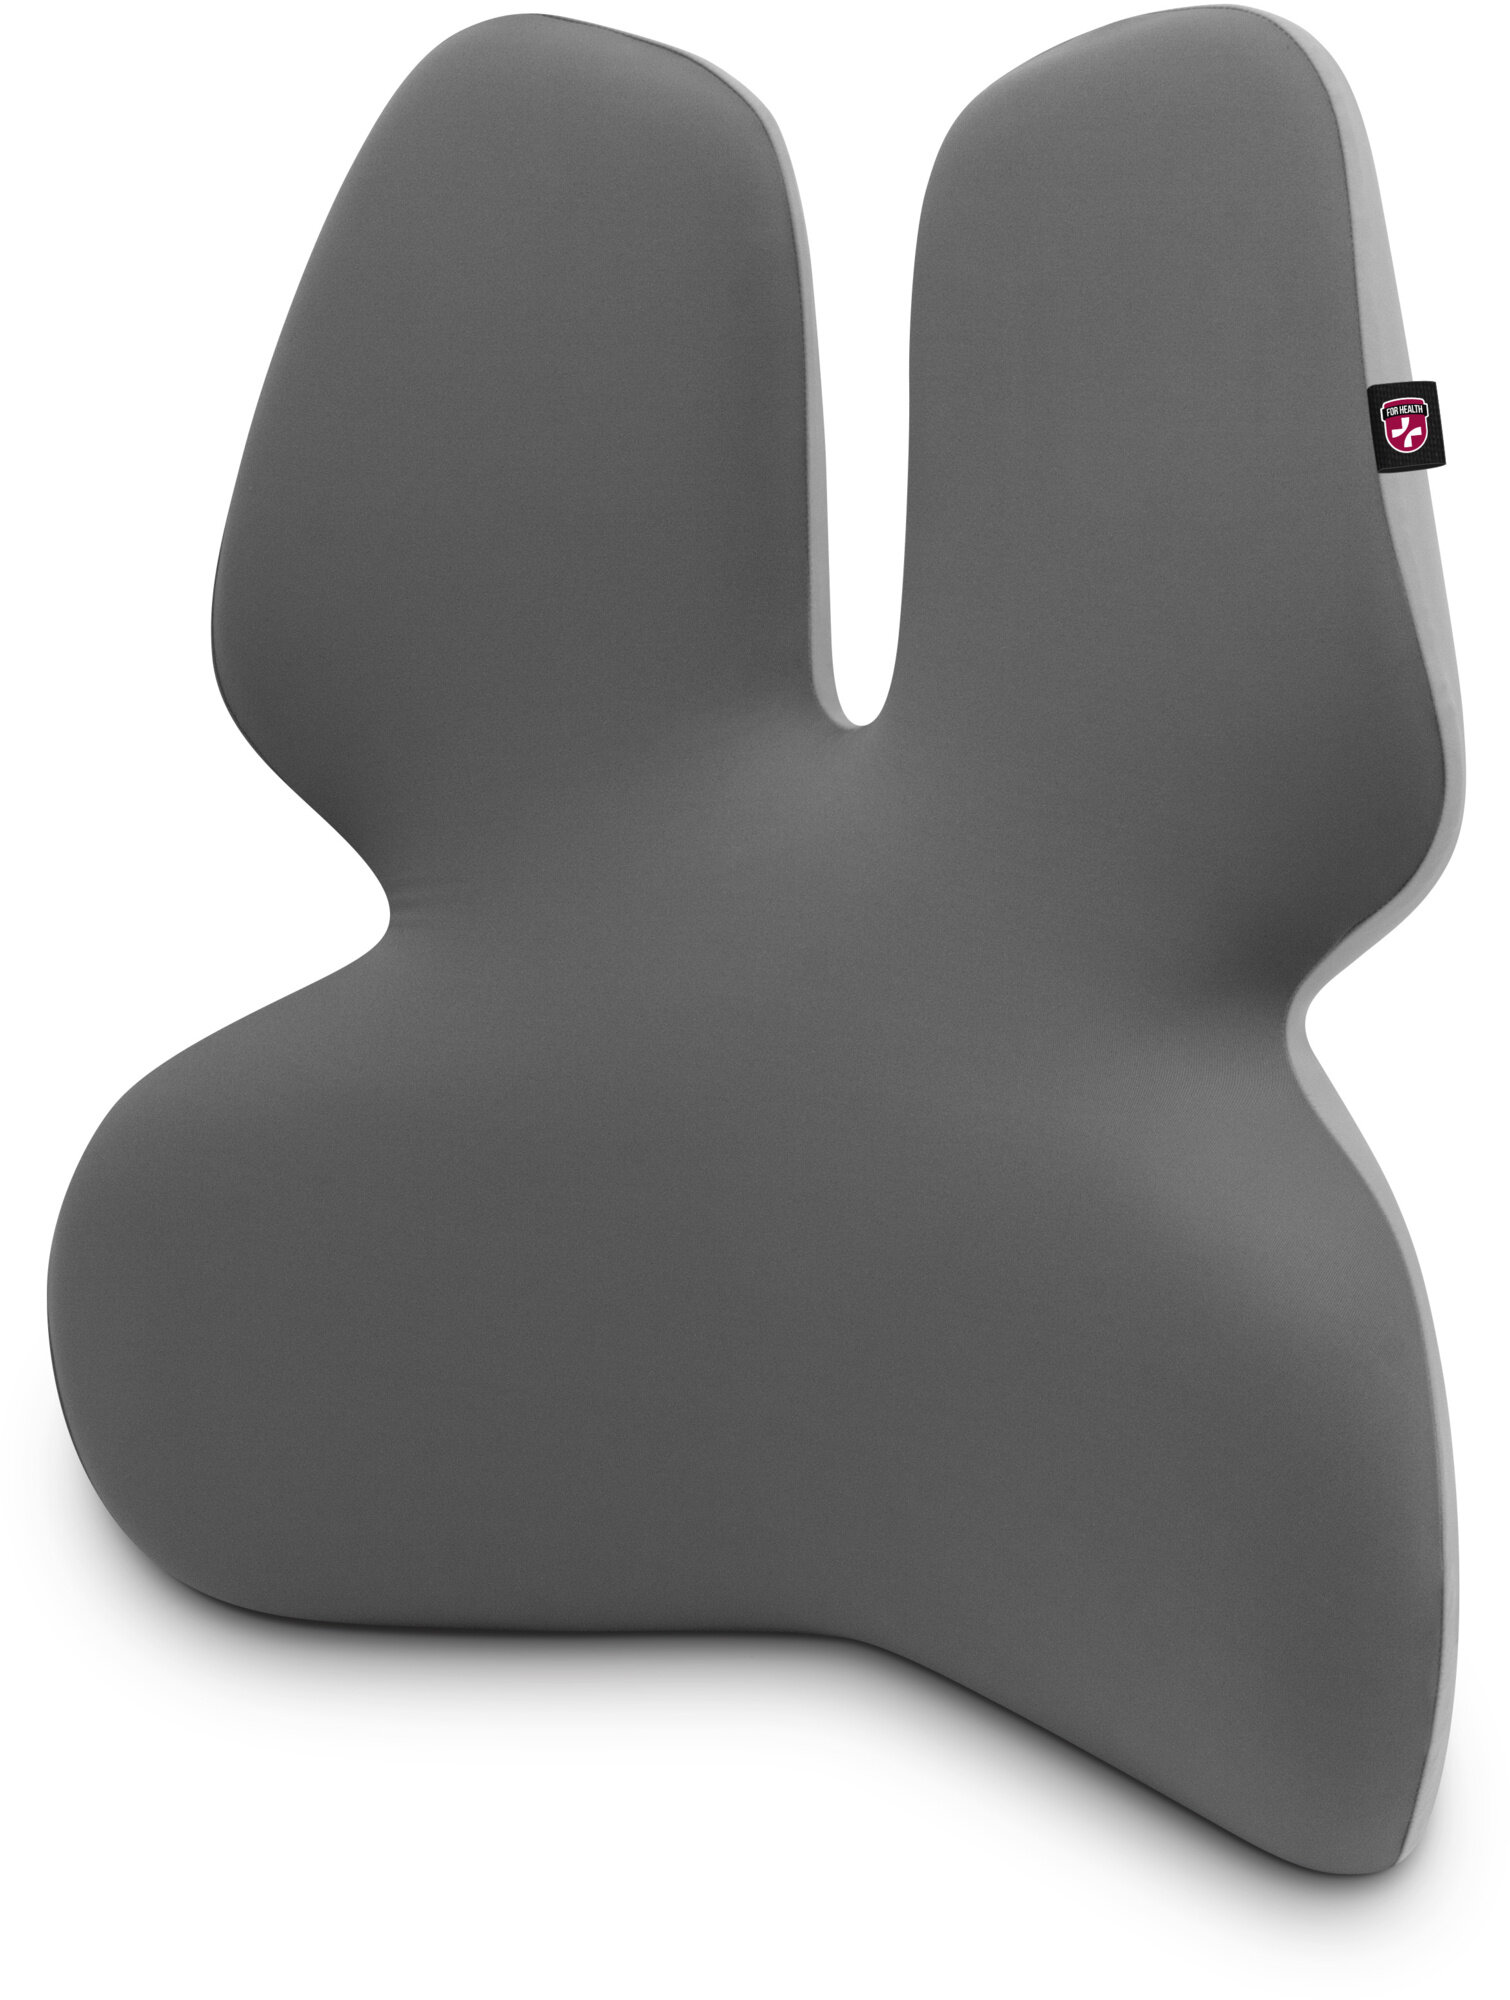 CONNECT IT FOR HEALTH anatomická bederní opěrka na židli GamaPro, šedá - CFH-5902-GY